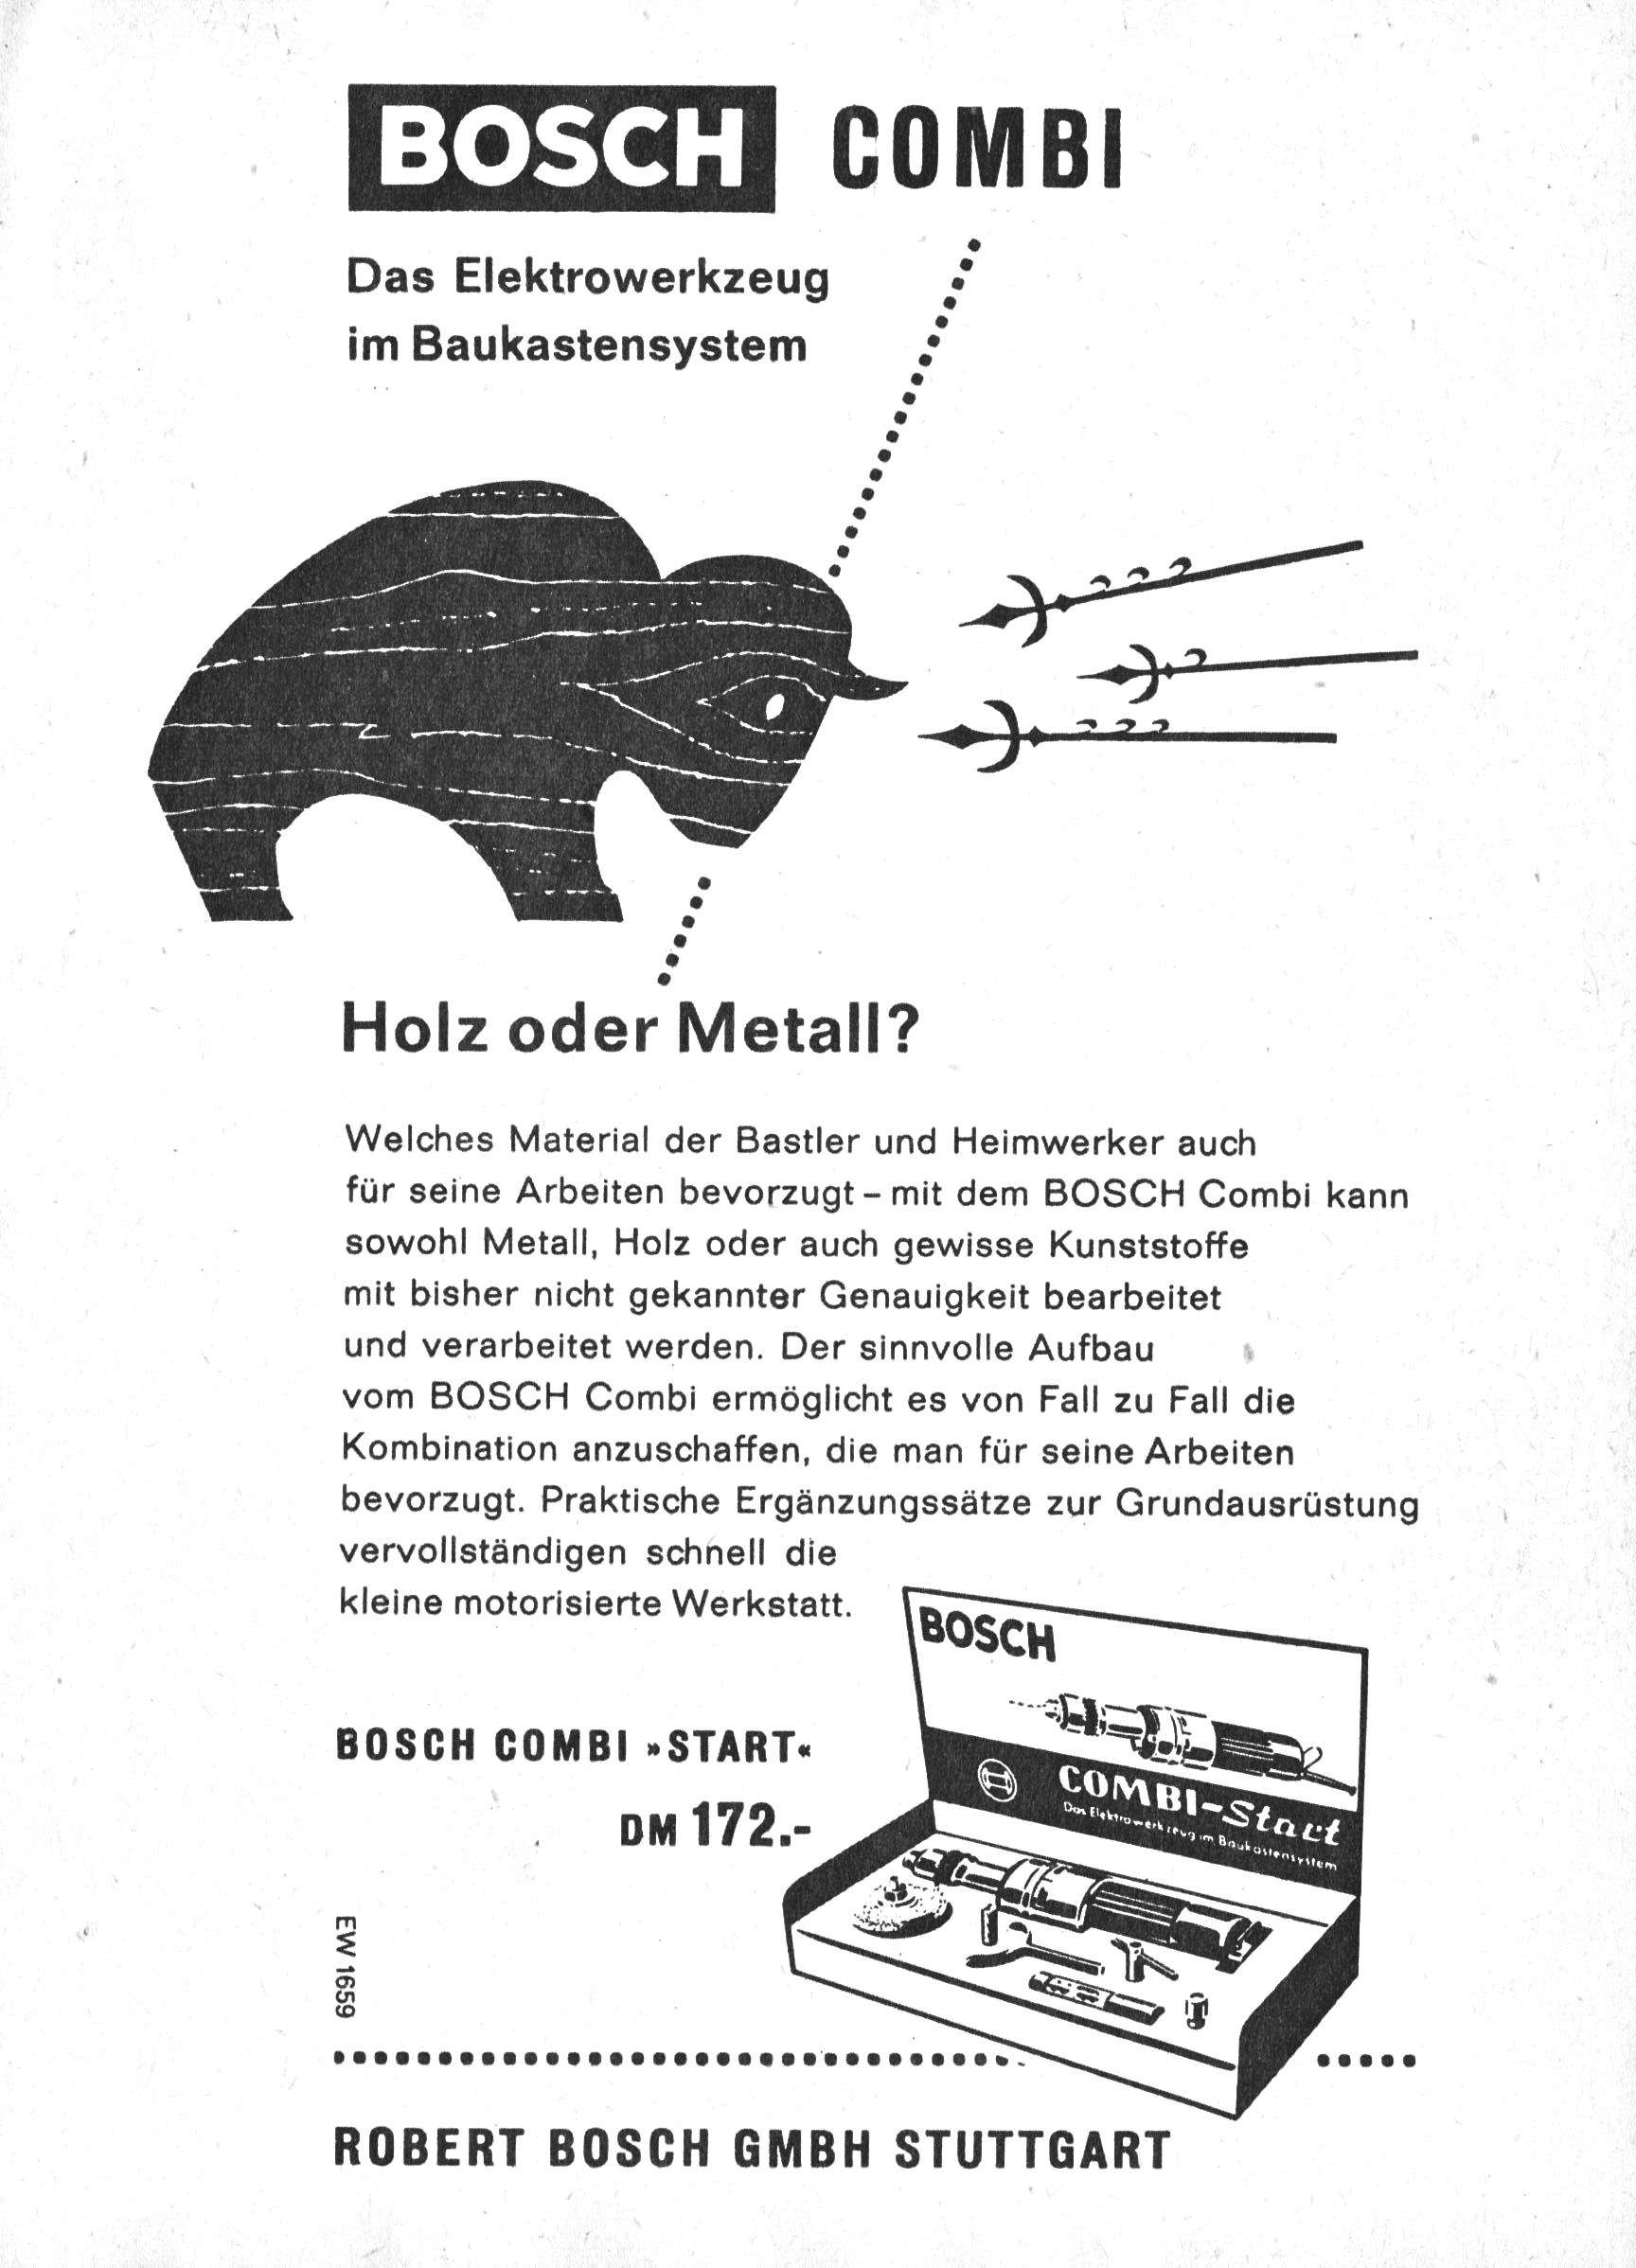 Bosch 1959 H1.jpg